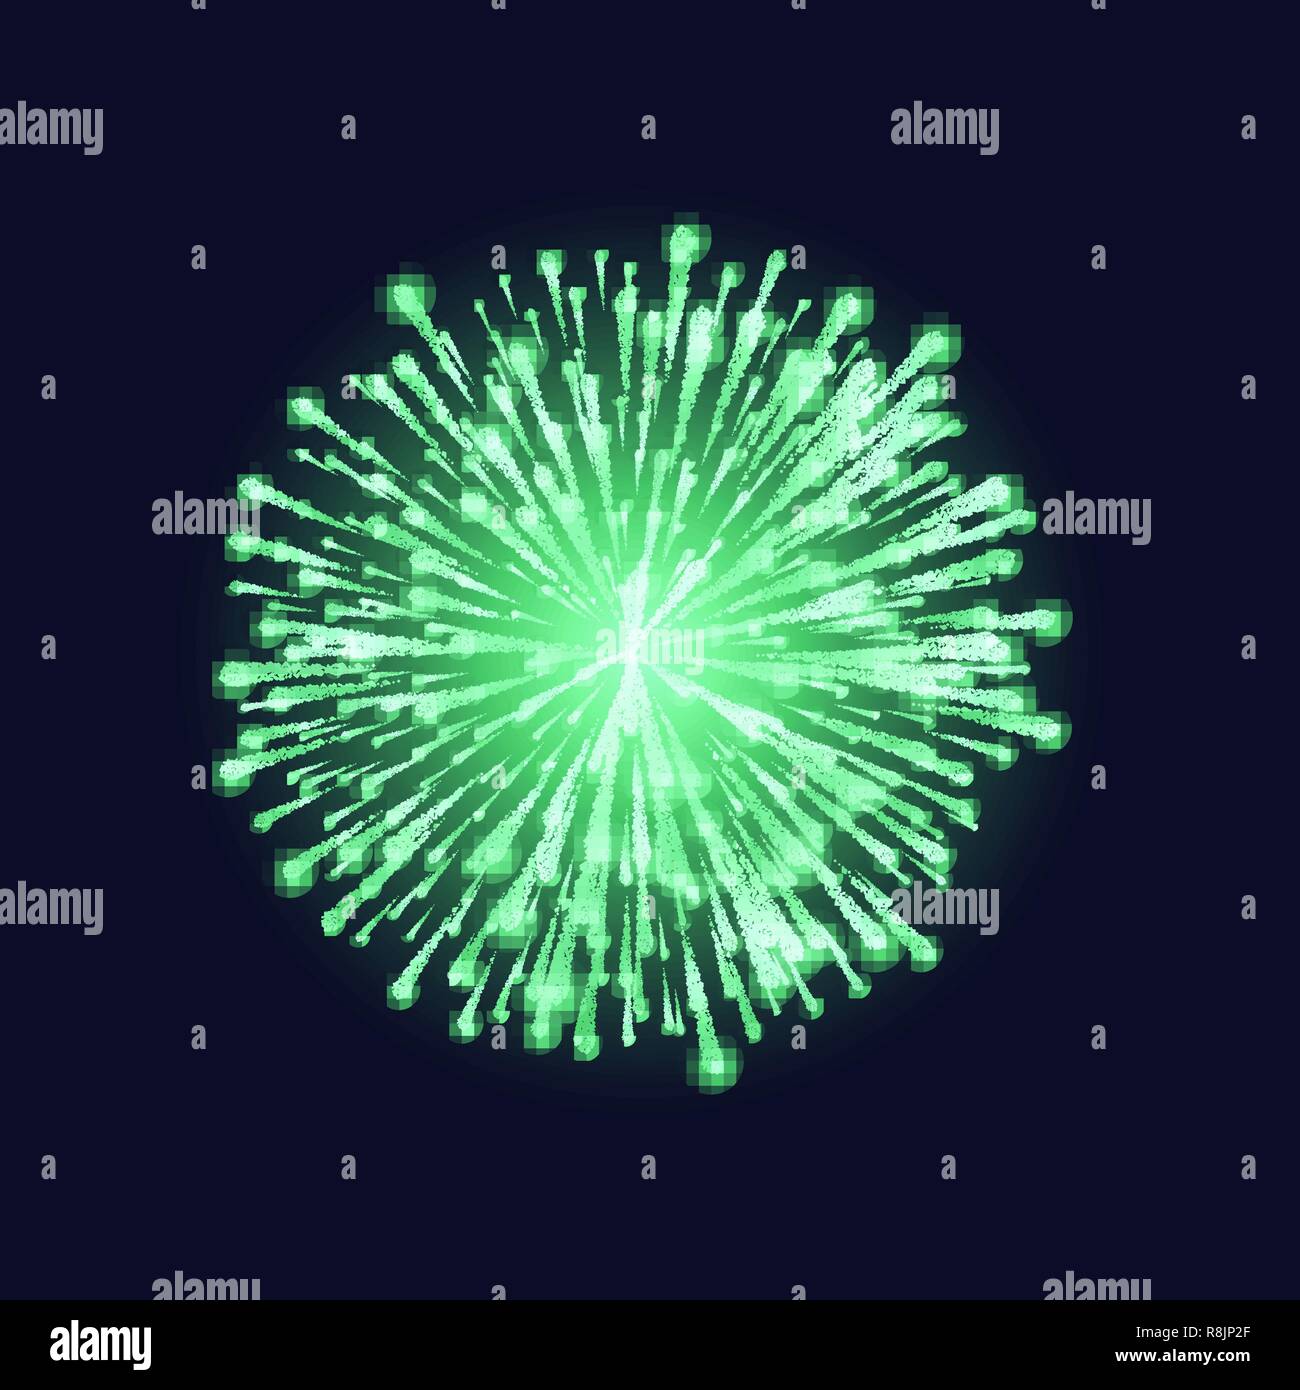 Feuerwerk isoliert. Schönen grünen Feuerwerk am dunklen Himmel Hintergrund. Hellen Dekoration Weihnachten, Frohes Neues Jahr Feier oder fest. Vektor i Stock Vektor